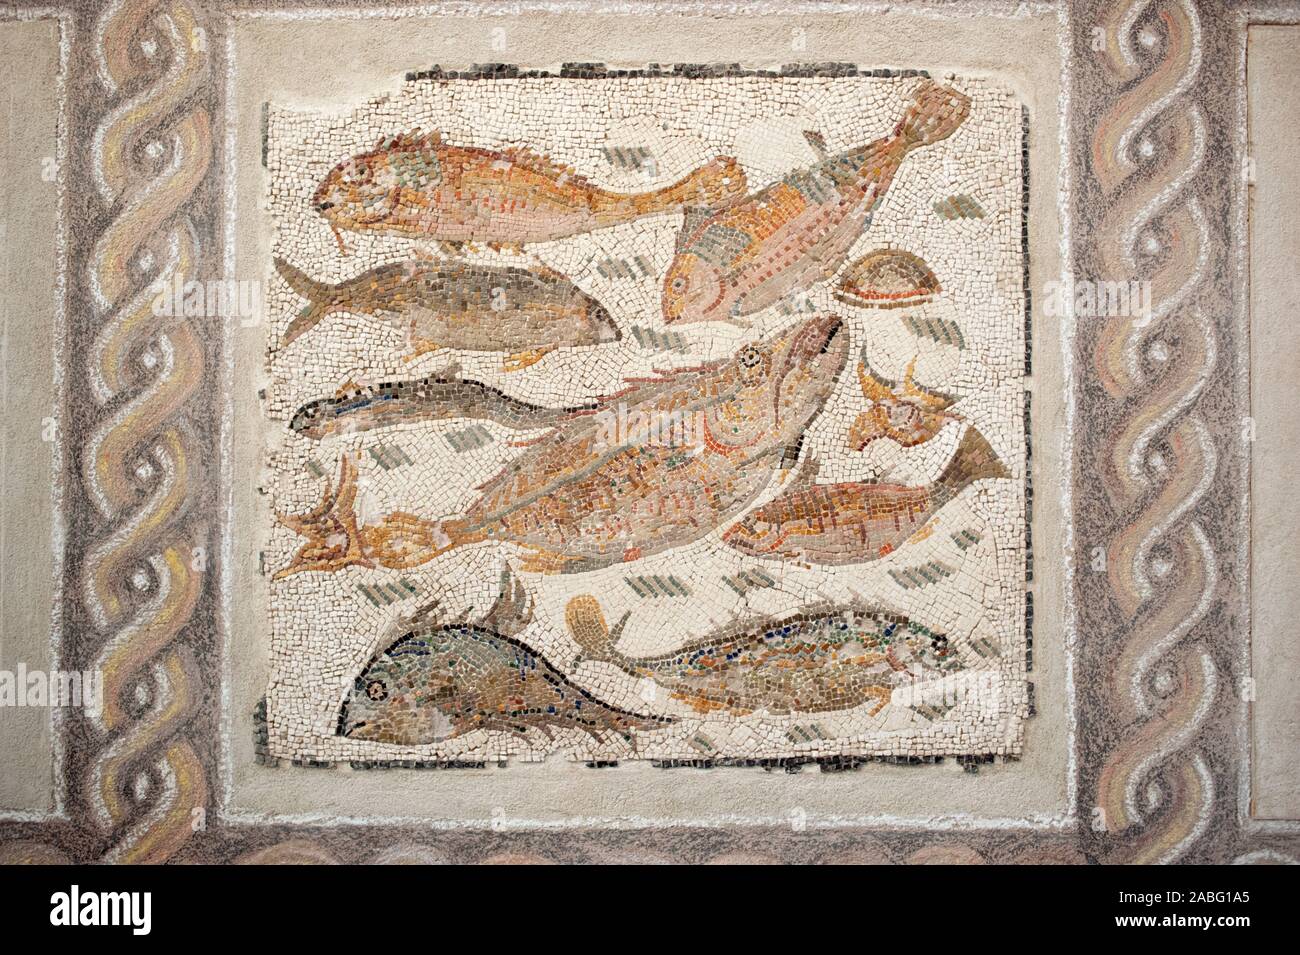 Italie, Rome, Palazzo Massimo alle terme, Museo Nazionale Romano, Musée national romain, mosaïque romaine avec poissons (2nd-3rd siècle après J.-C.) Banque D'Images